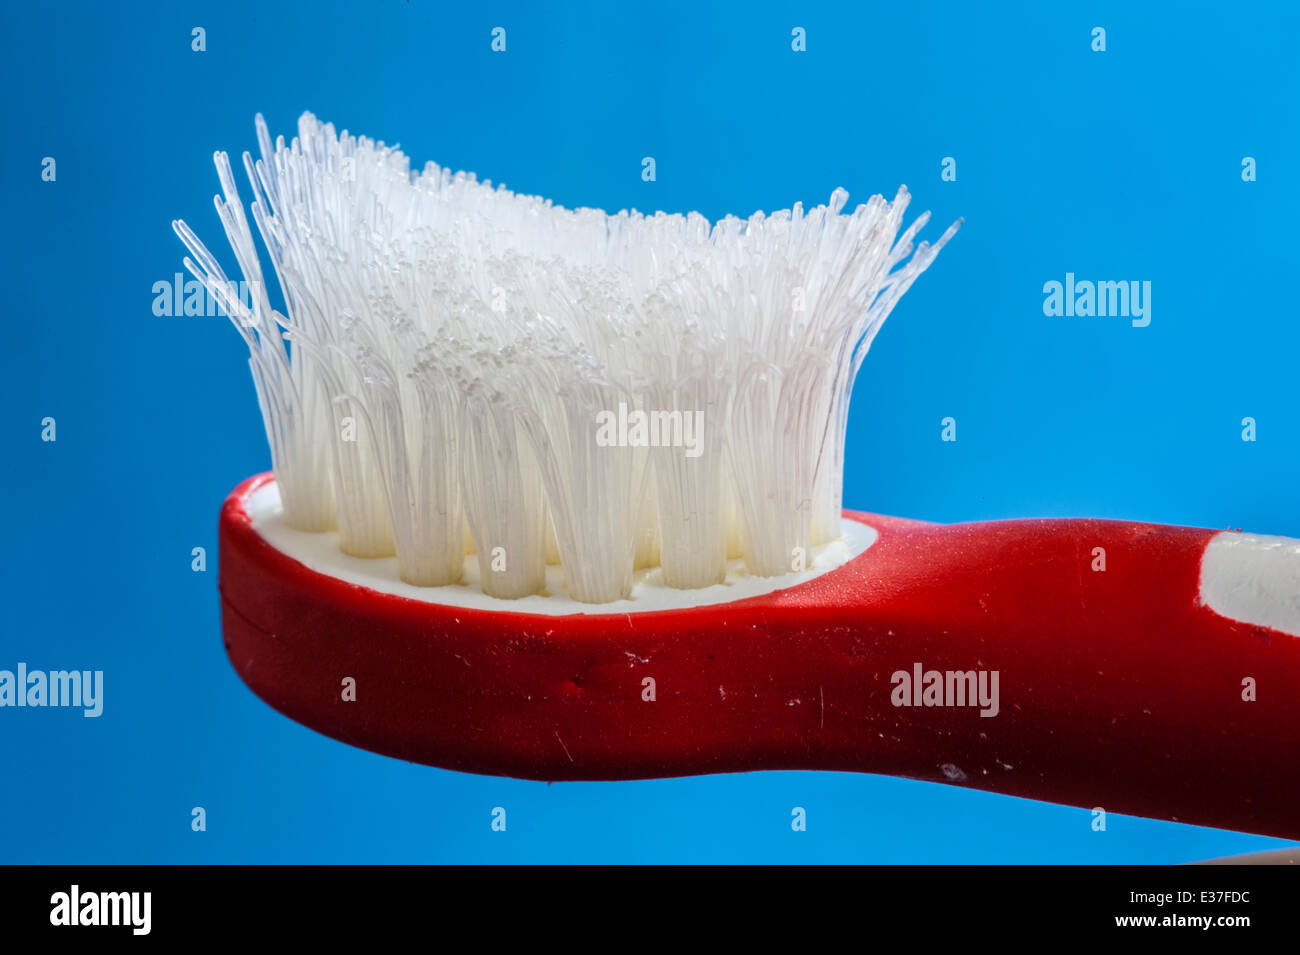 Alte, ausgefranste Kinderzahnbürste, die ersetzt werden muss. Zahnärzte  empfehlen, um eine Zahnbürste mindestens alle 3 Monate zu ersetzen  Stockfotografie - Alamy